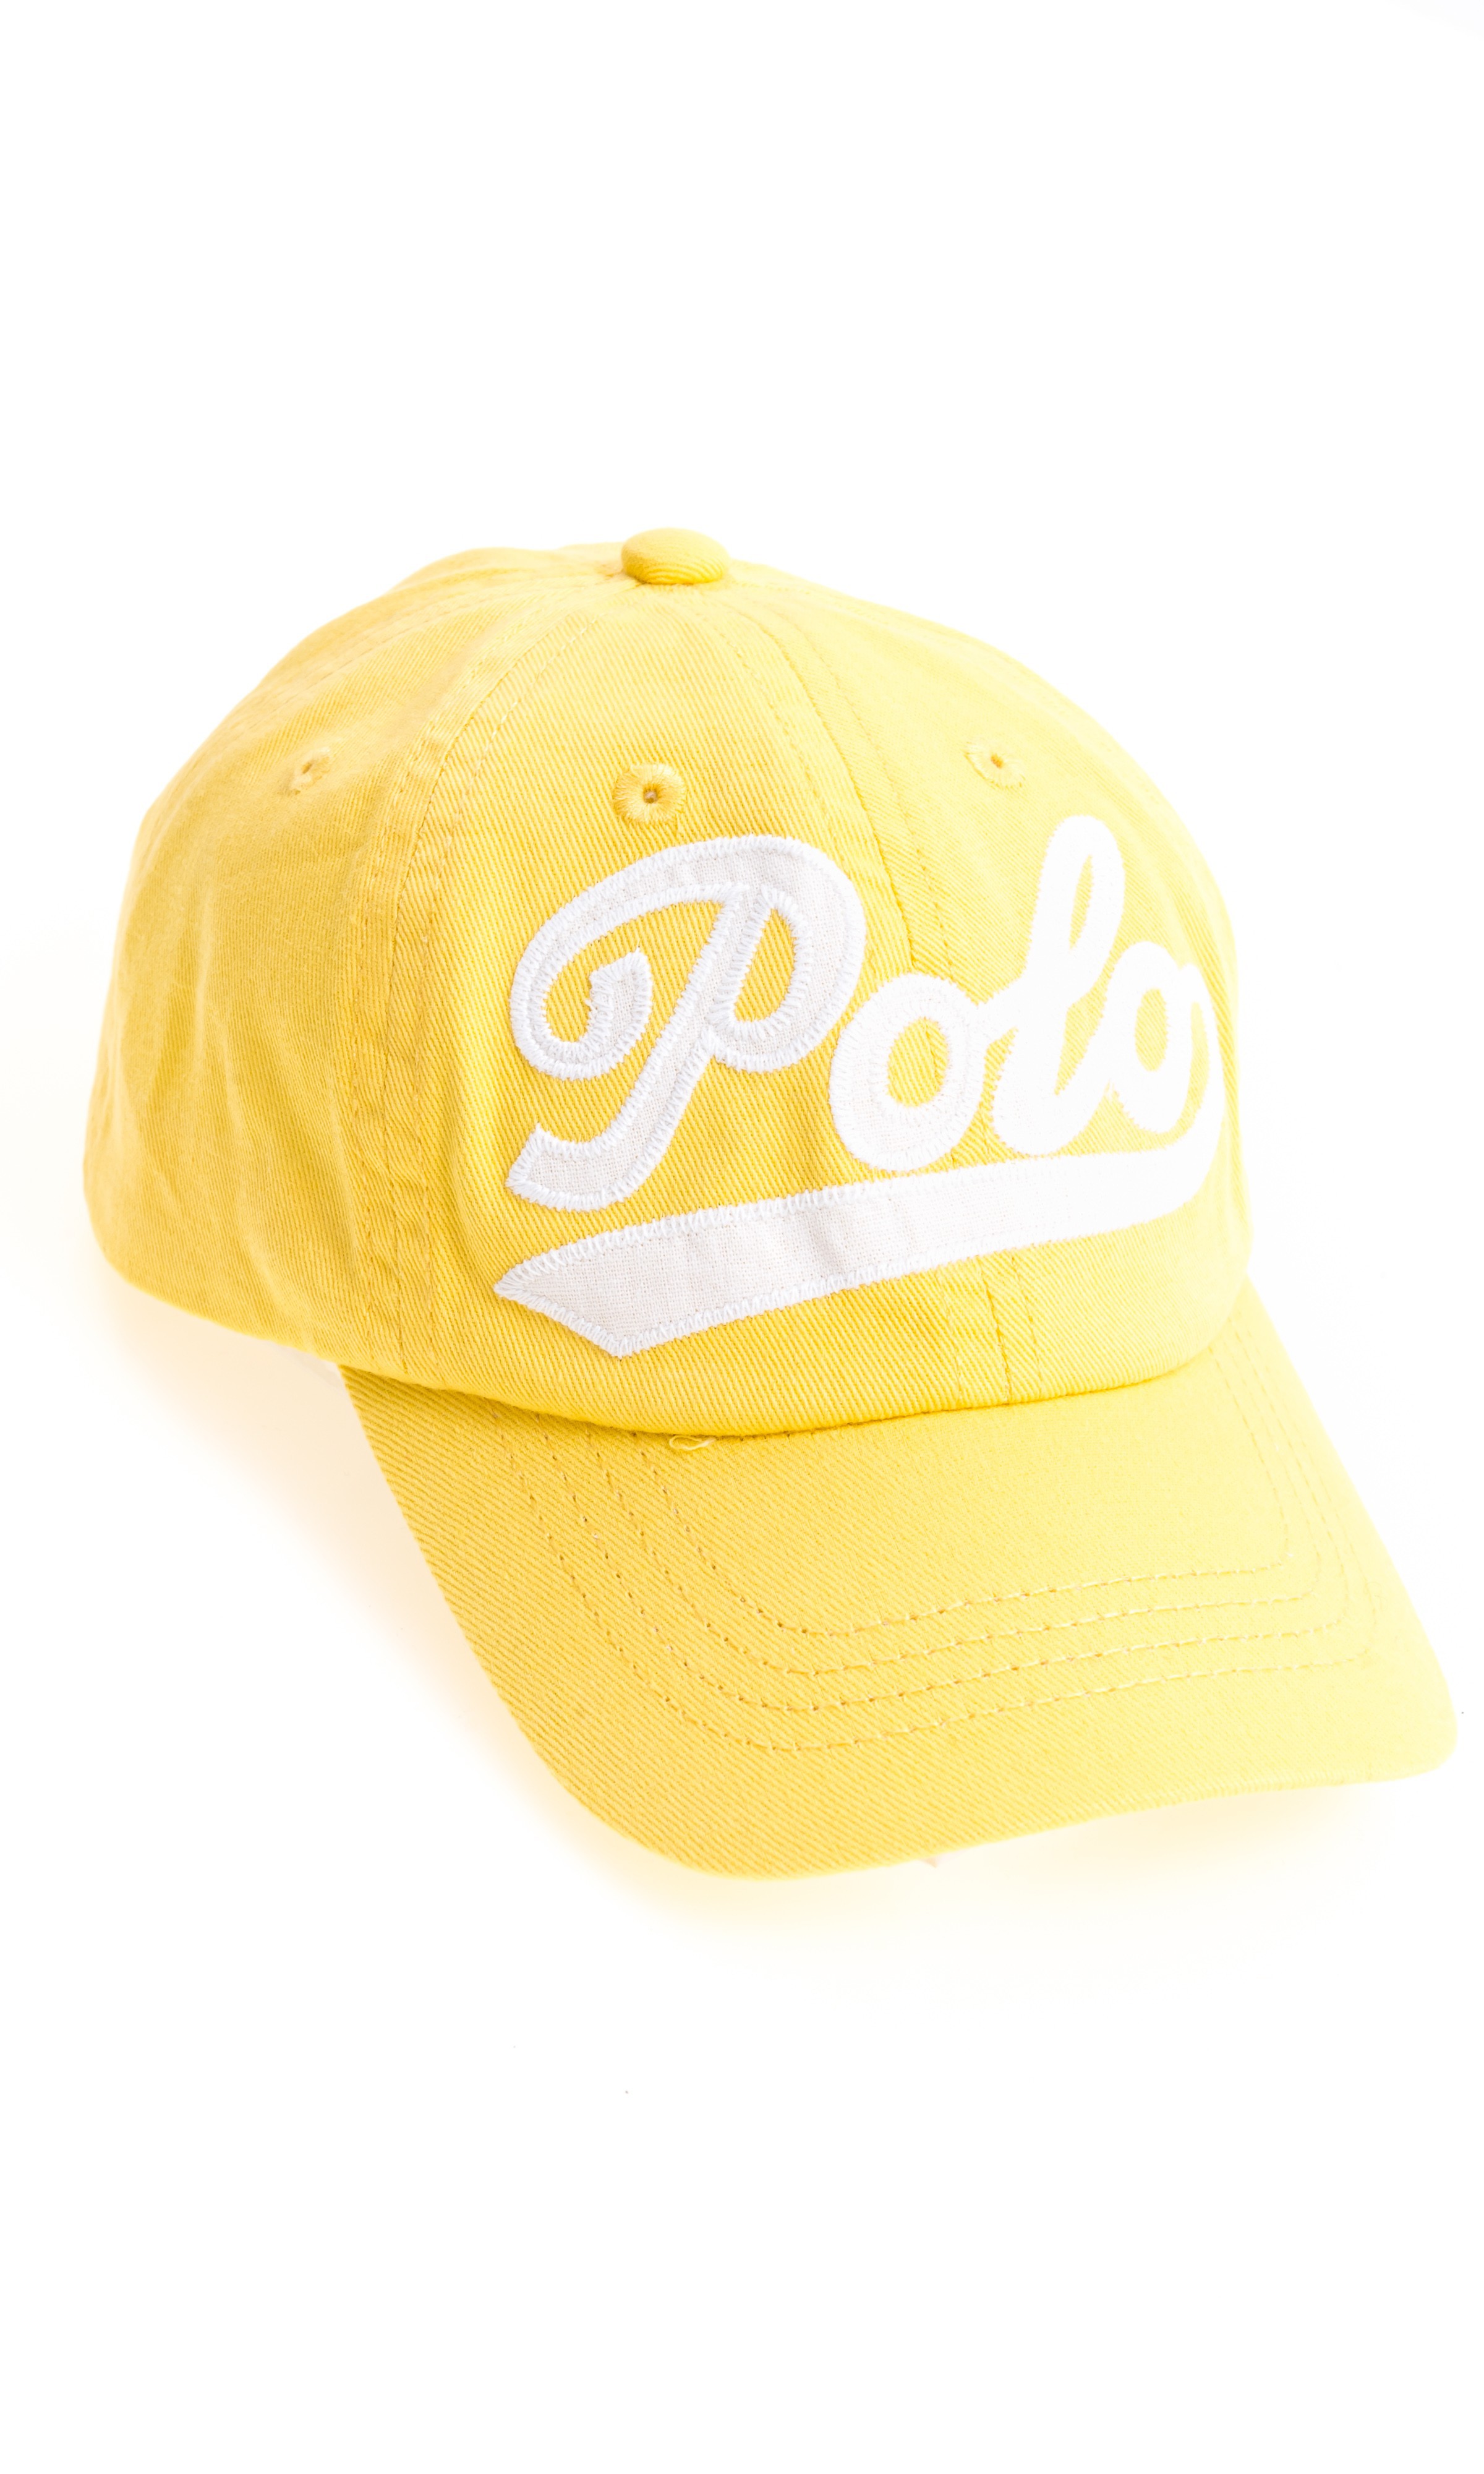 yellow polo cap